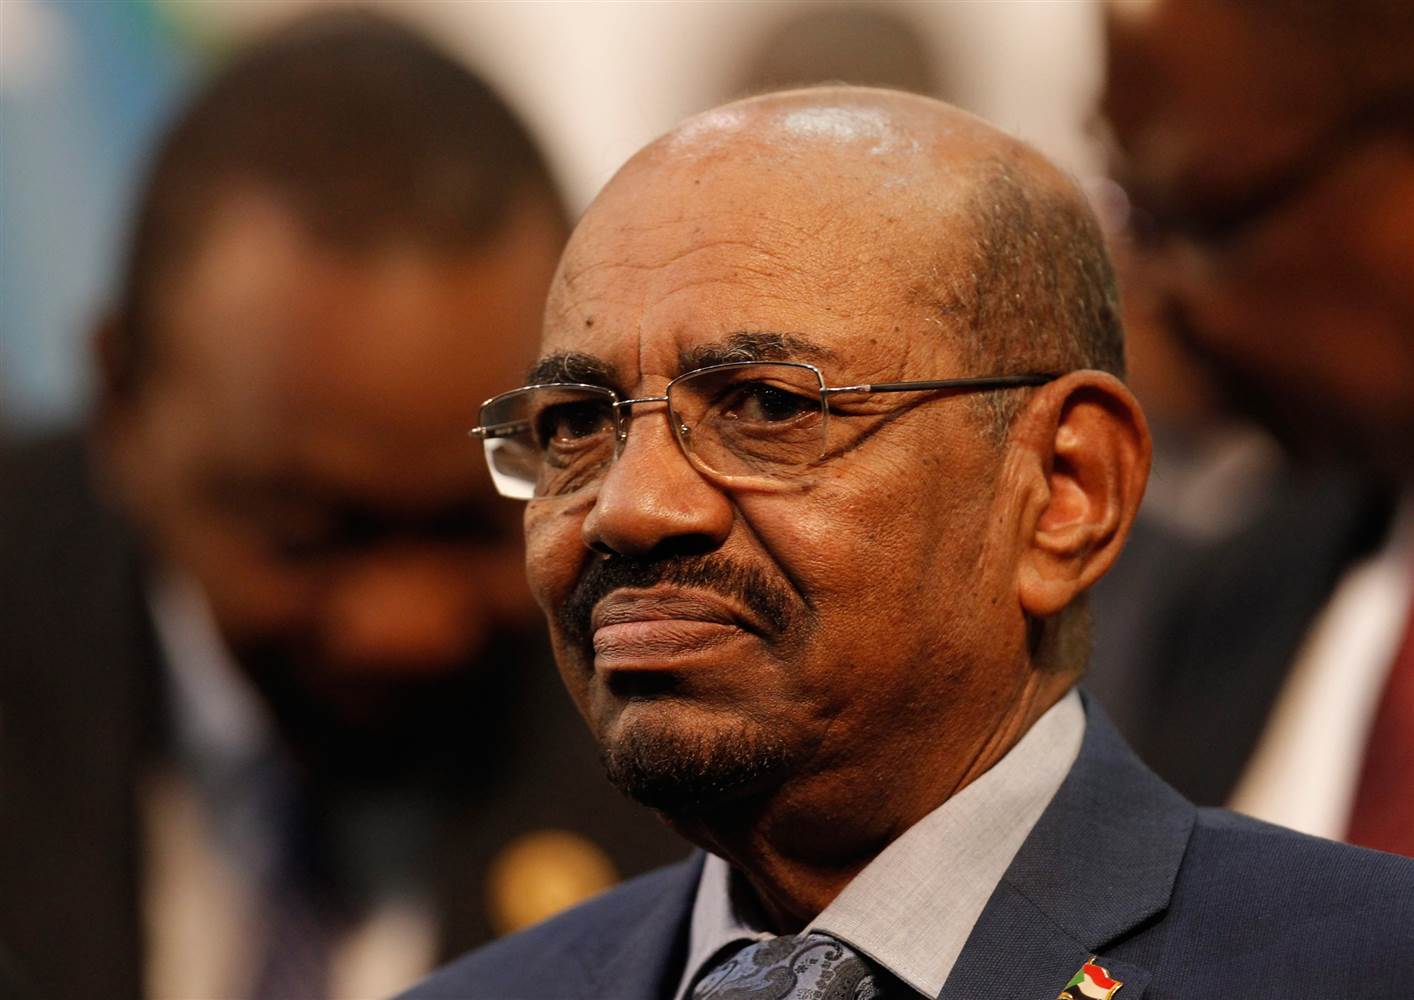 أين تحفظ جيش #السودان على عمر البشير ؟